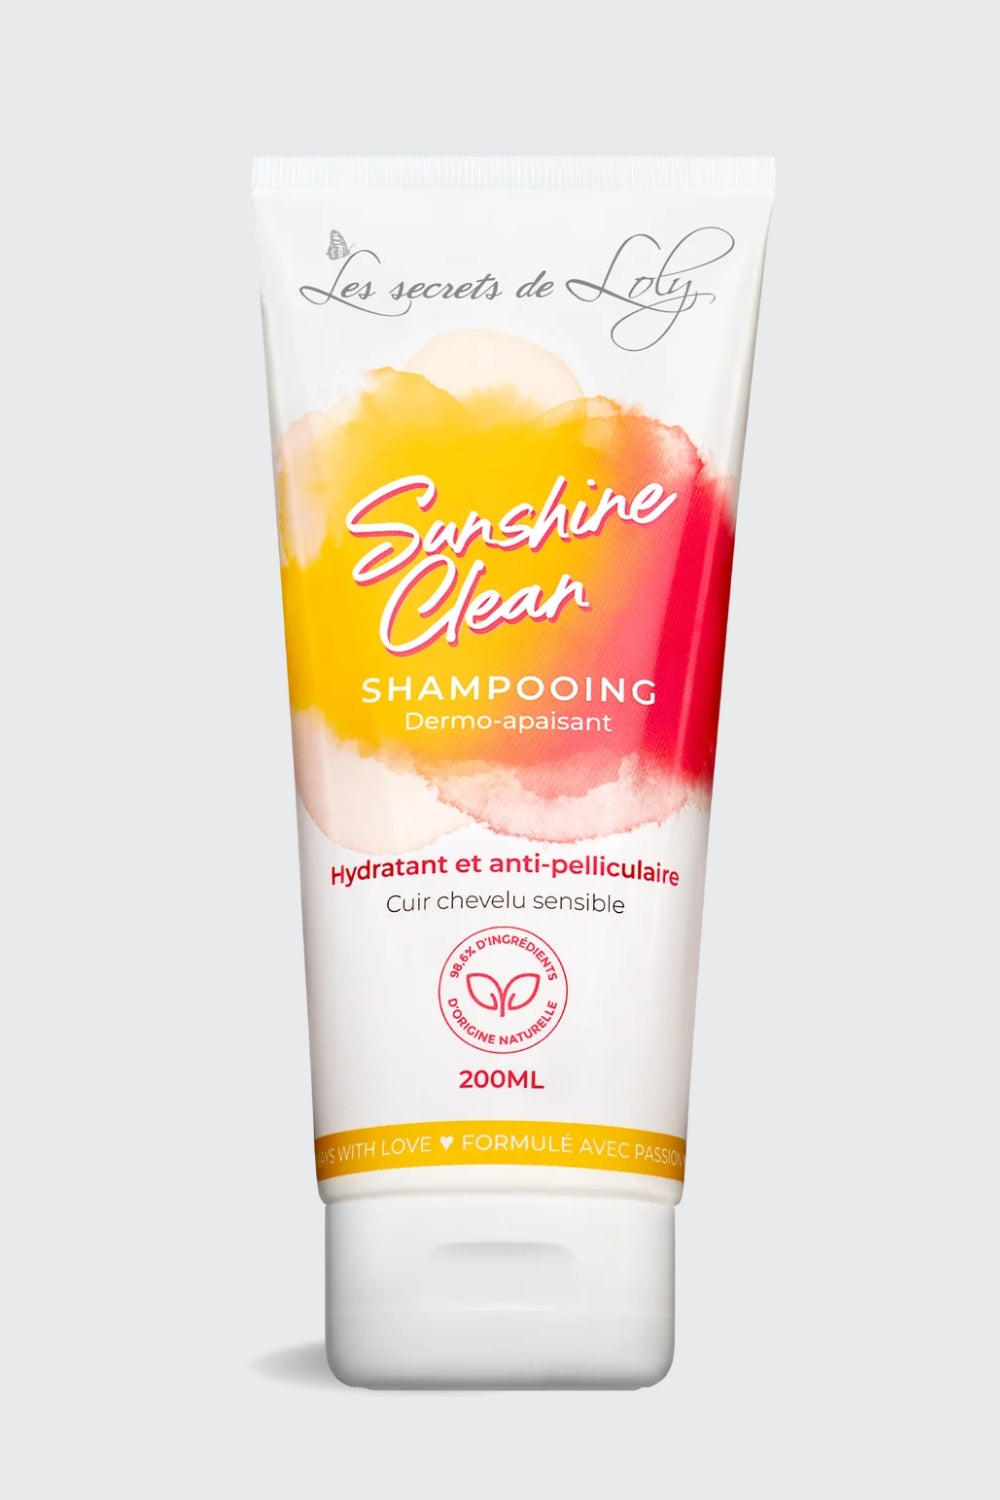 Les Secrets de Loly - Shampoo - Sunshine Clean - 200ml